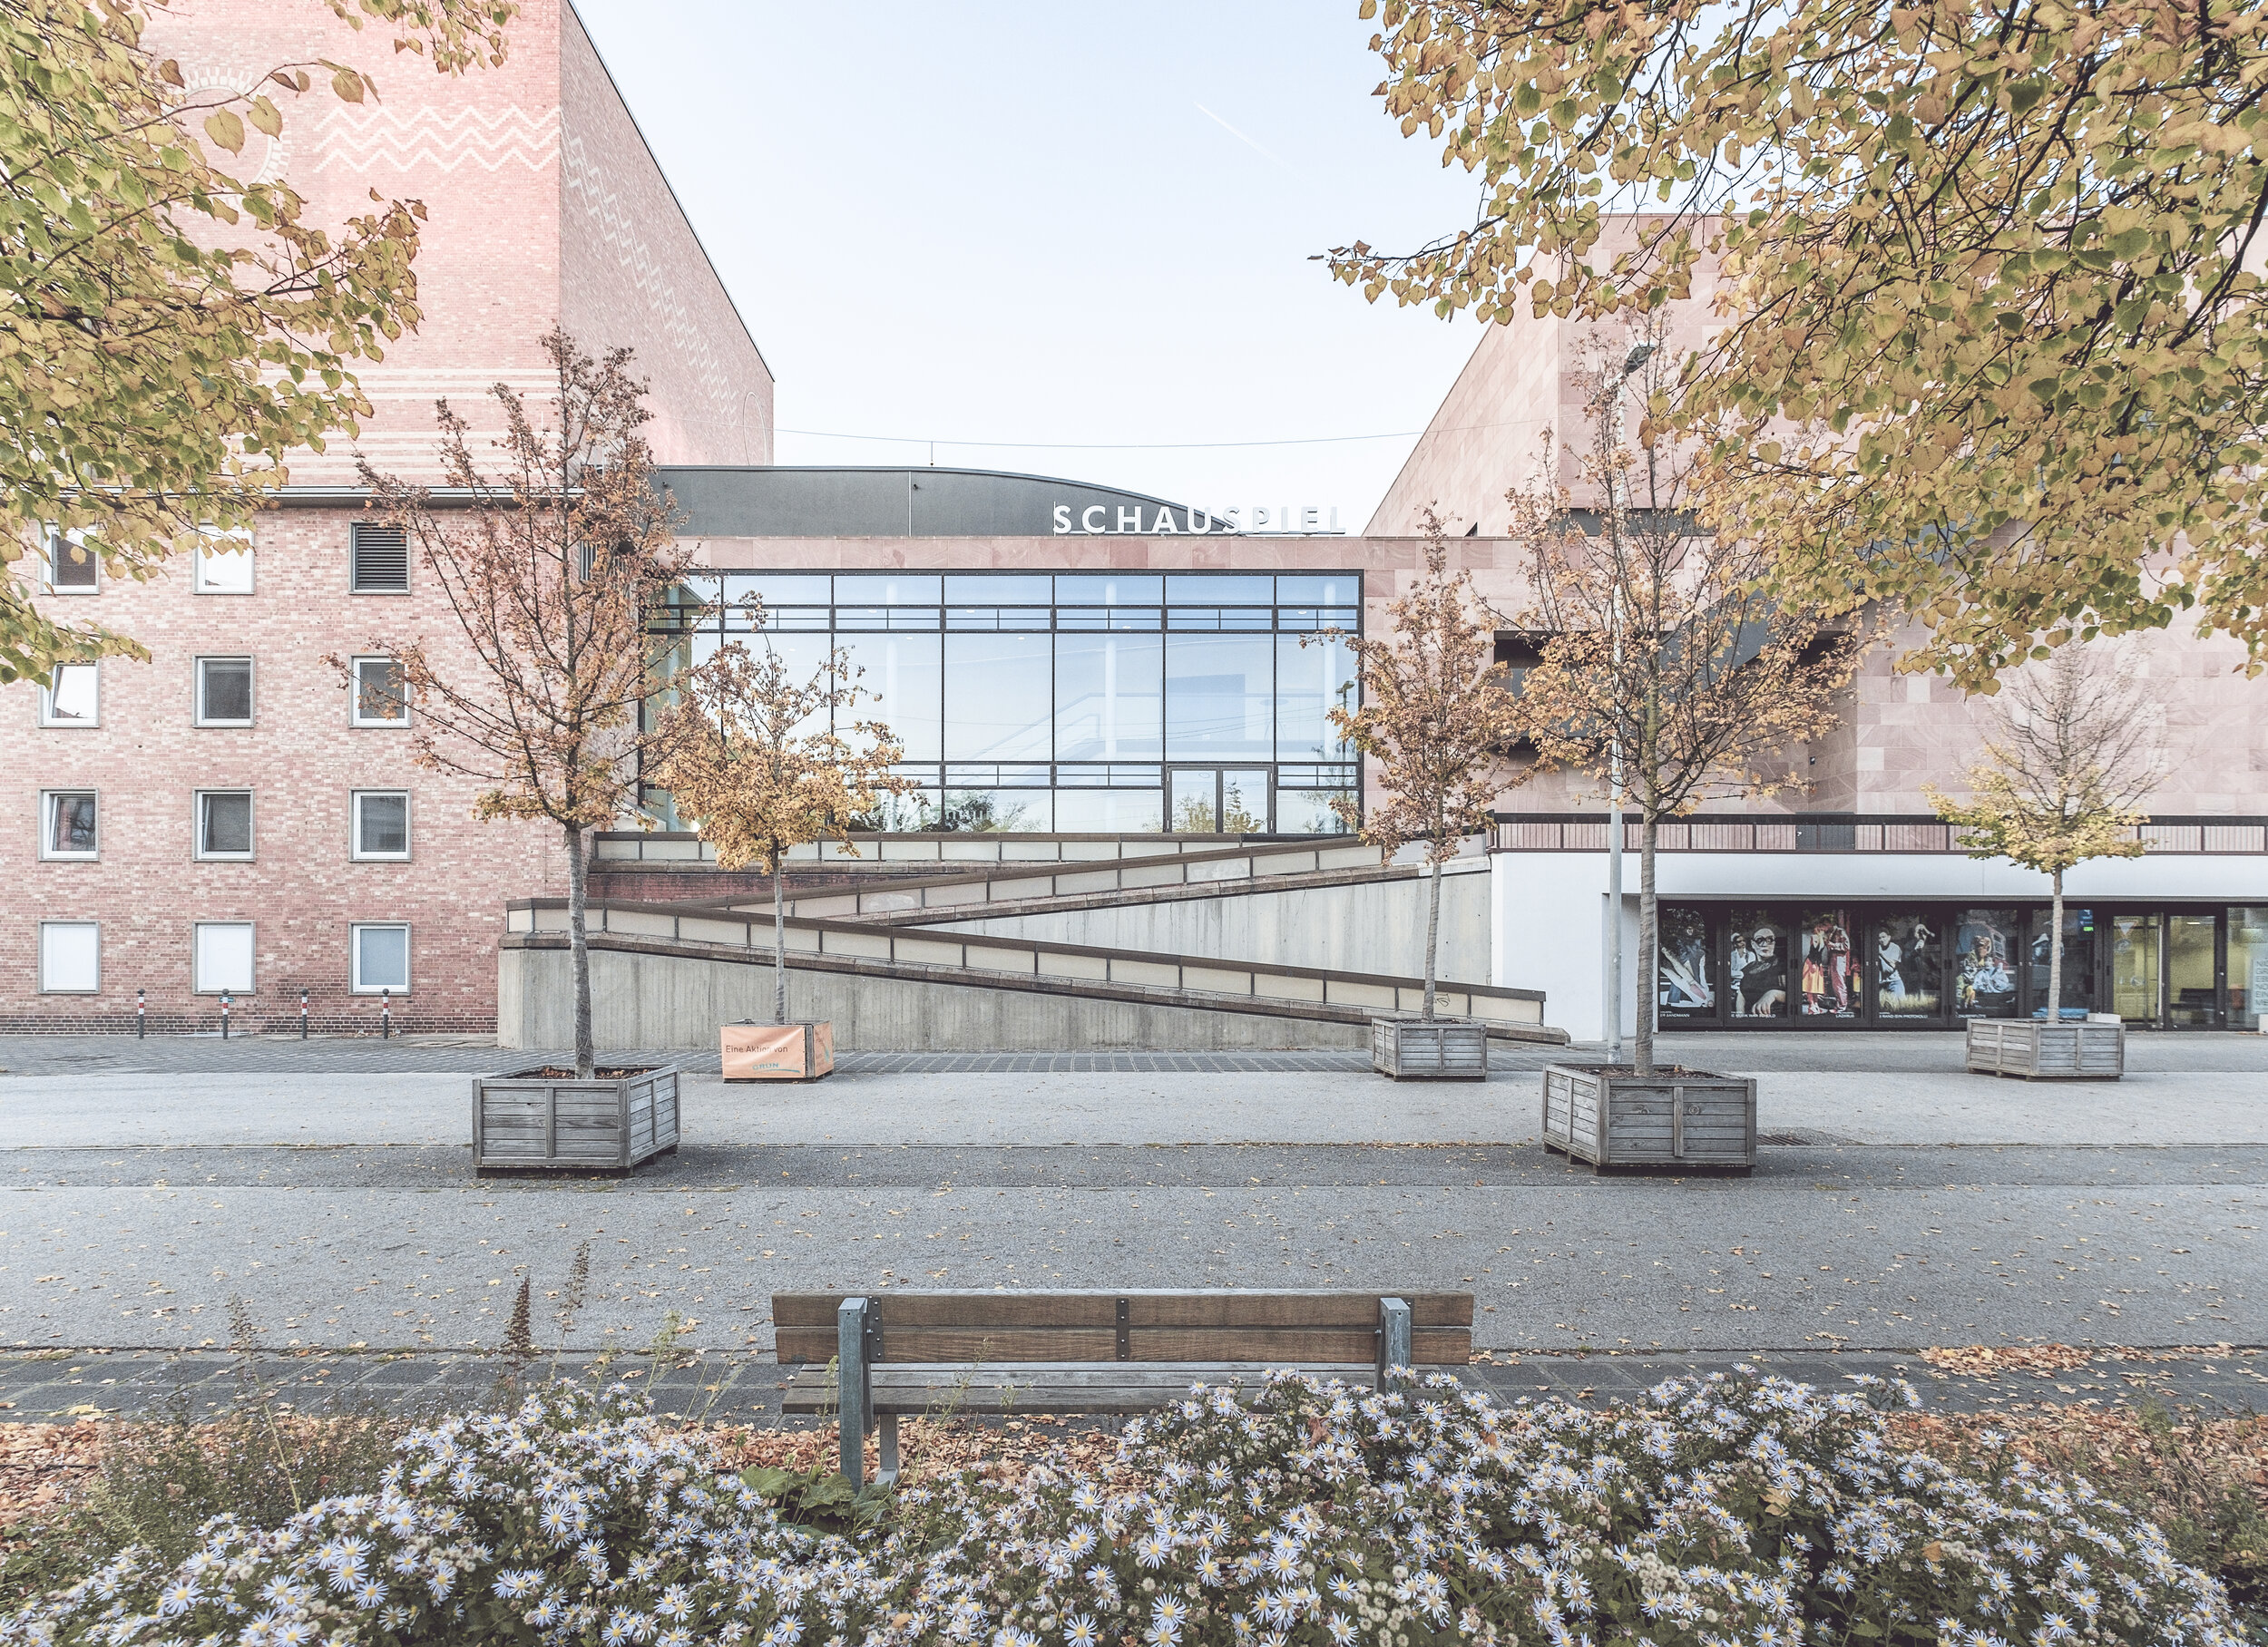 Schauspielhaus | Nürnberg